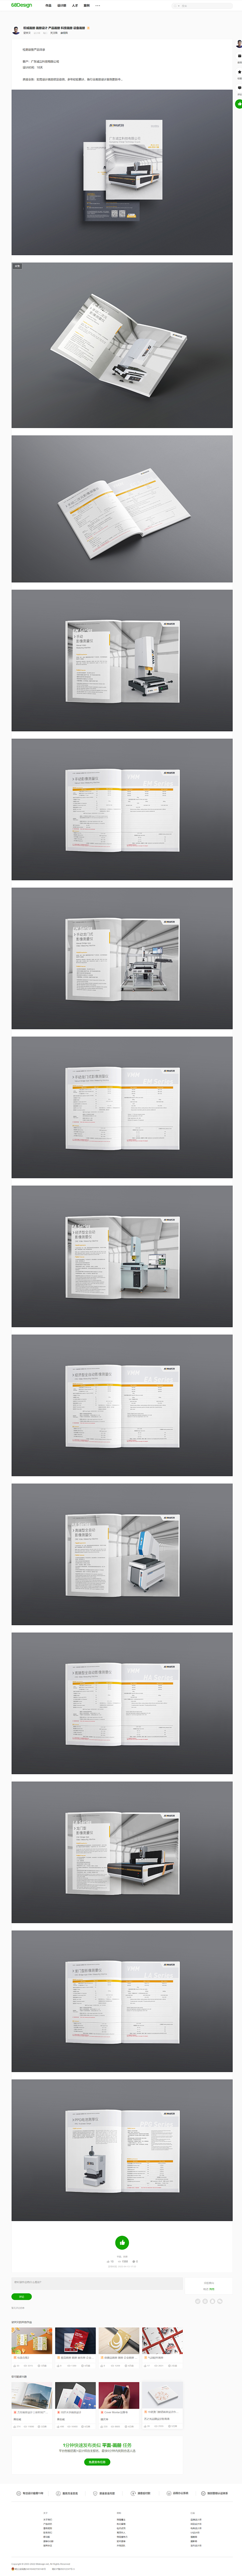 机械画册 画册设计 产品画册 科技画册 ...